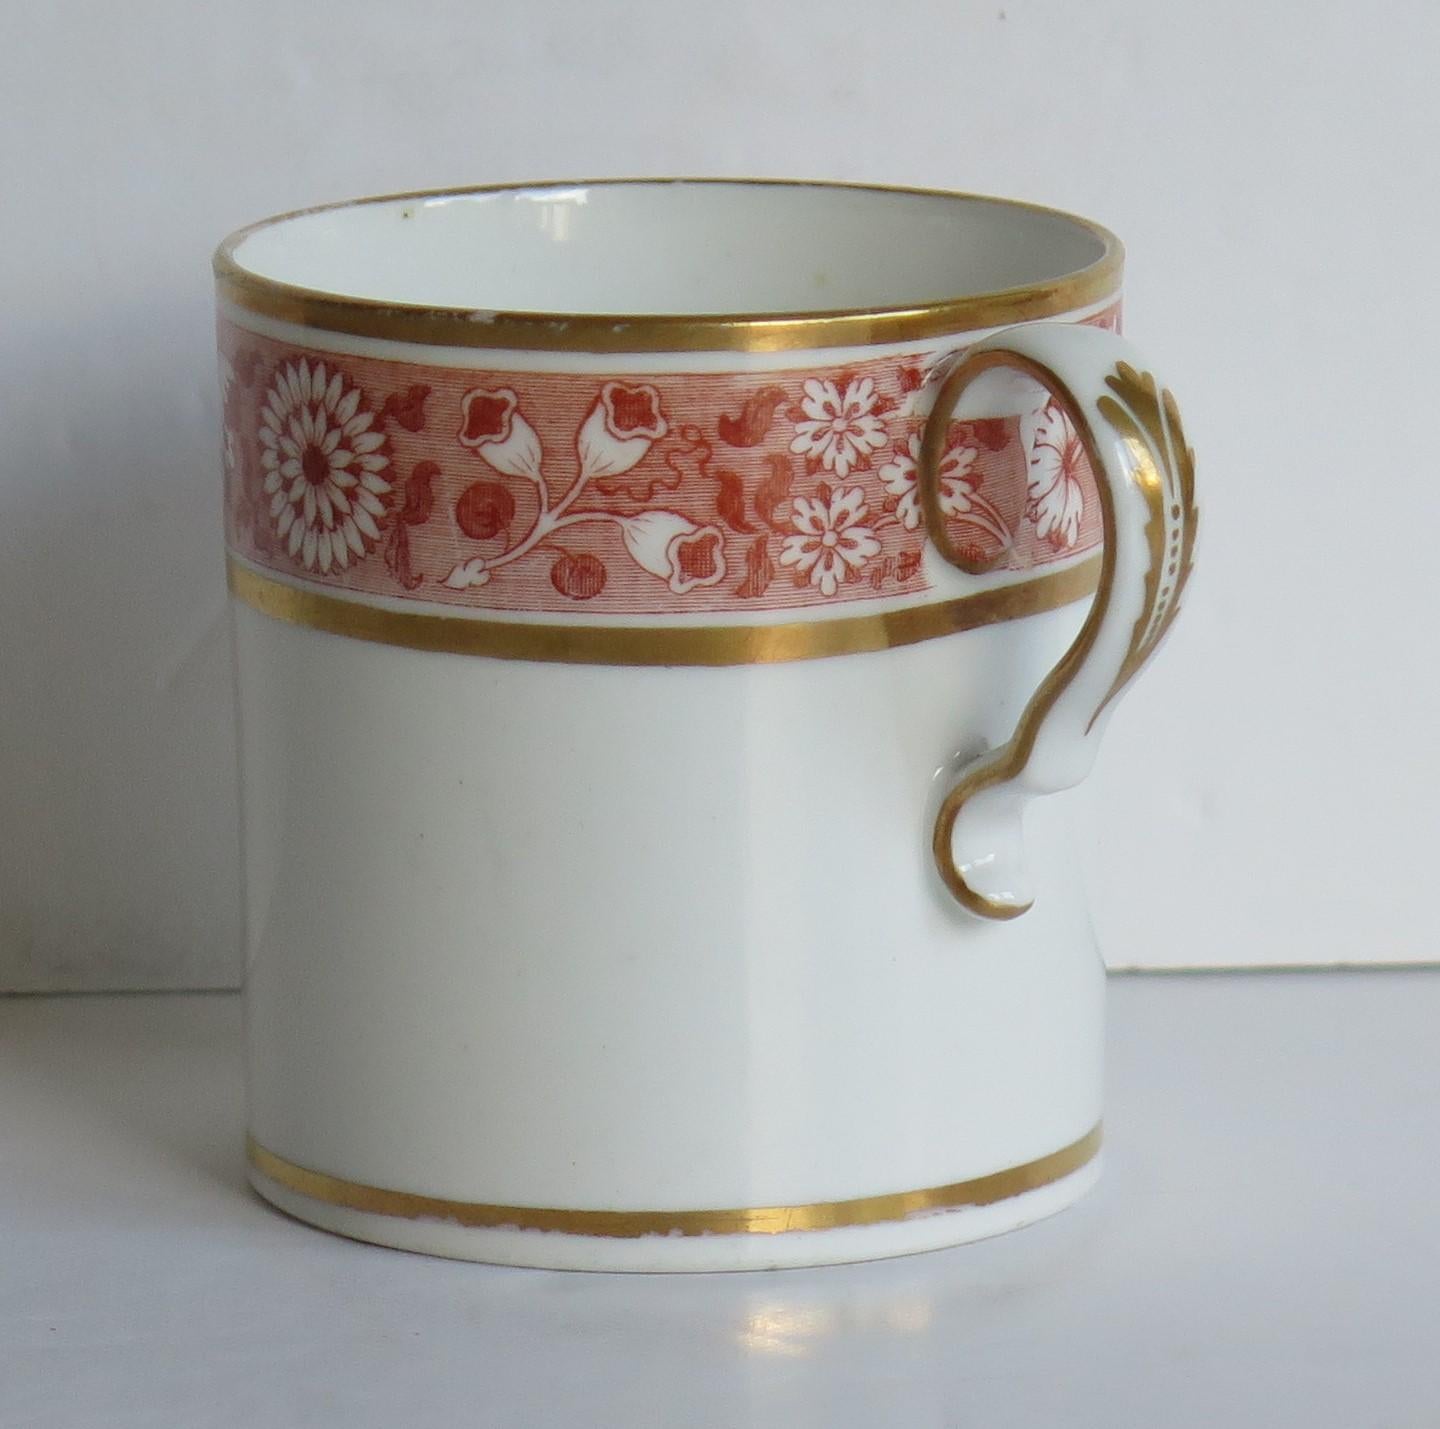 Il s'agit d'une boîte à café en porcelaine de bonne qualité que nous attribuons à Spode de Staffordshire, Angleterre, fabriquée au tout début du 19e siècle, période George 111, vers 1810.

La boîte à café est nominalement parallèle, avec une